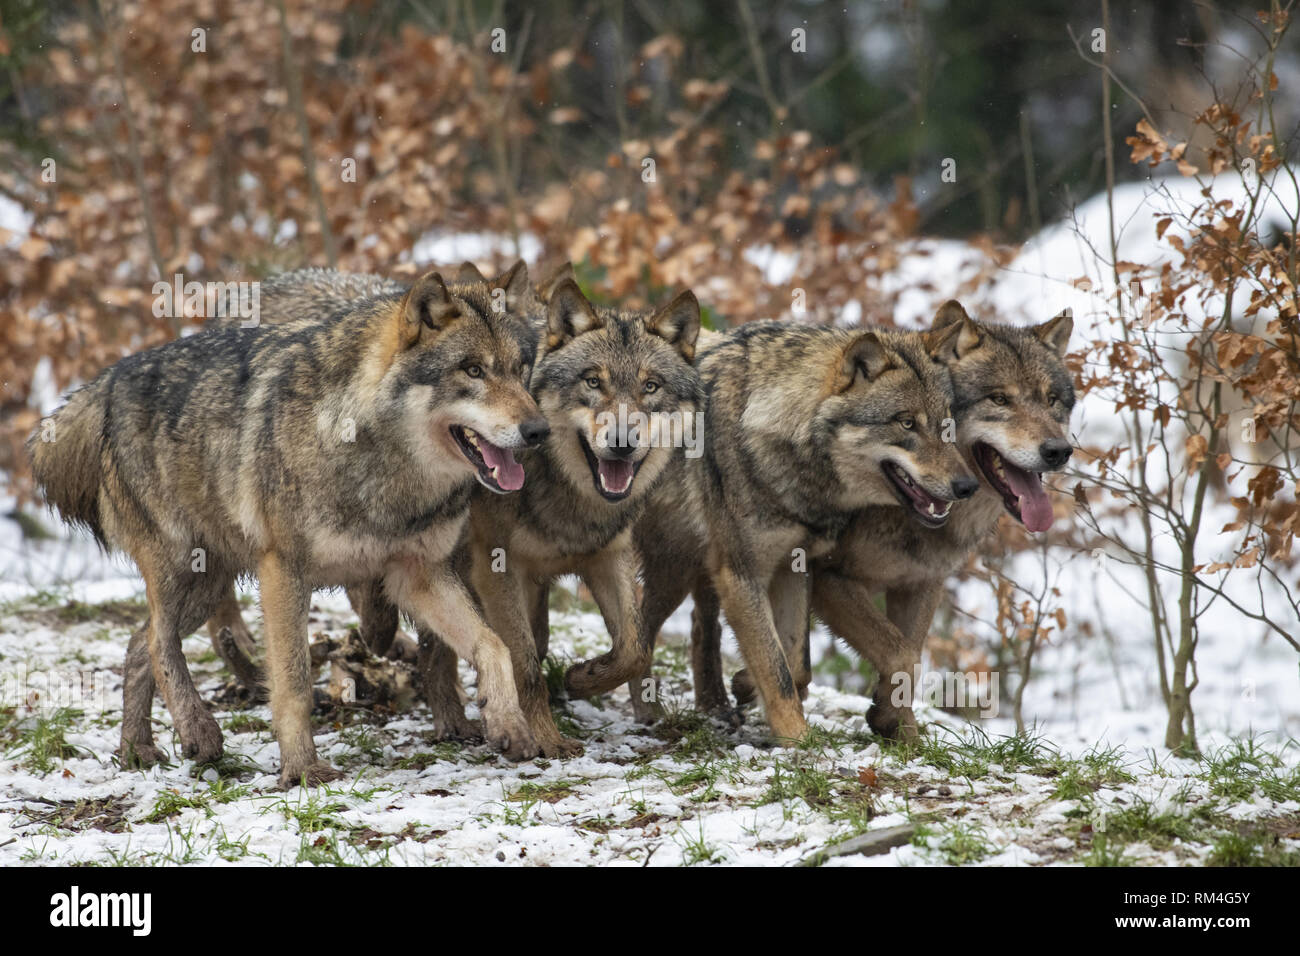 Manada de lobos (Canis lupus) en invierno bosque, Neuhaus, Baja Sajonia, Alemania Foto de stock